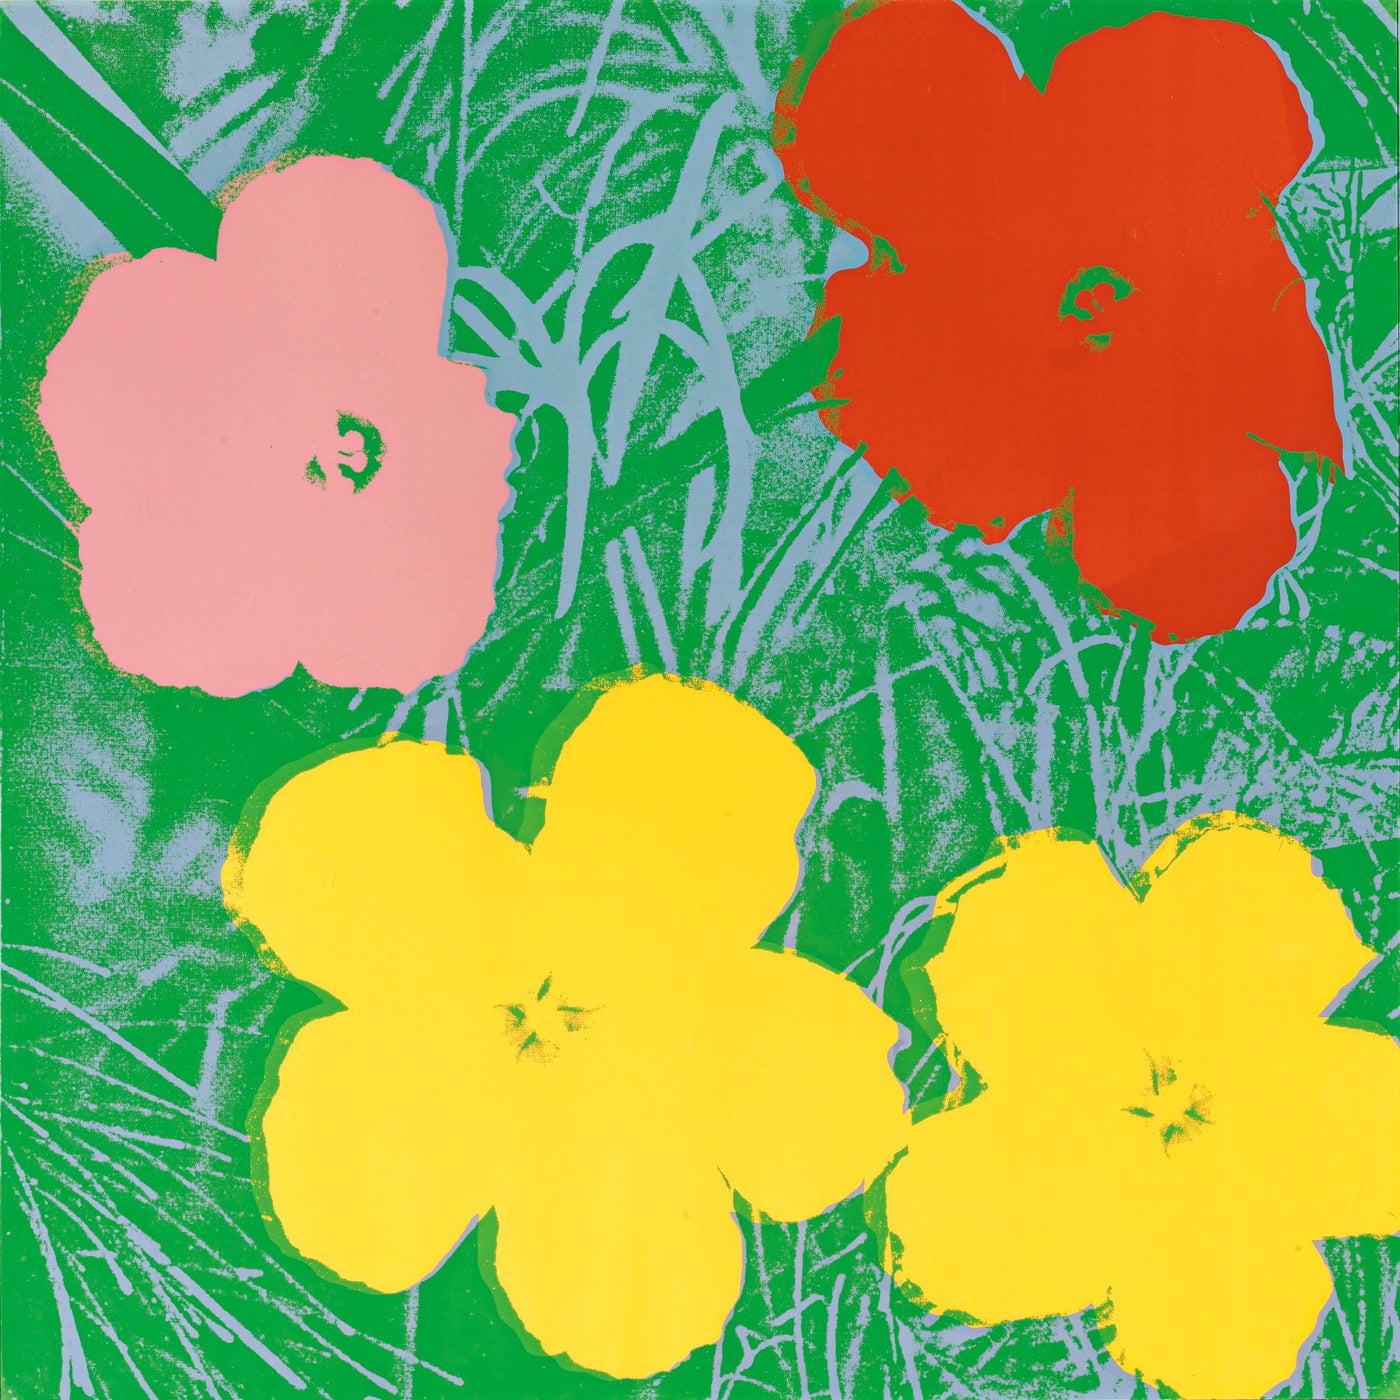 Andy Warhol Flowers (Feldman II.65) 1970